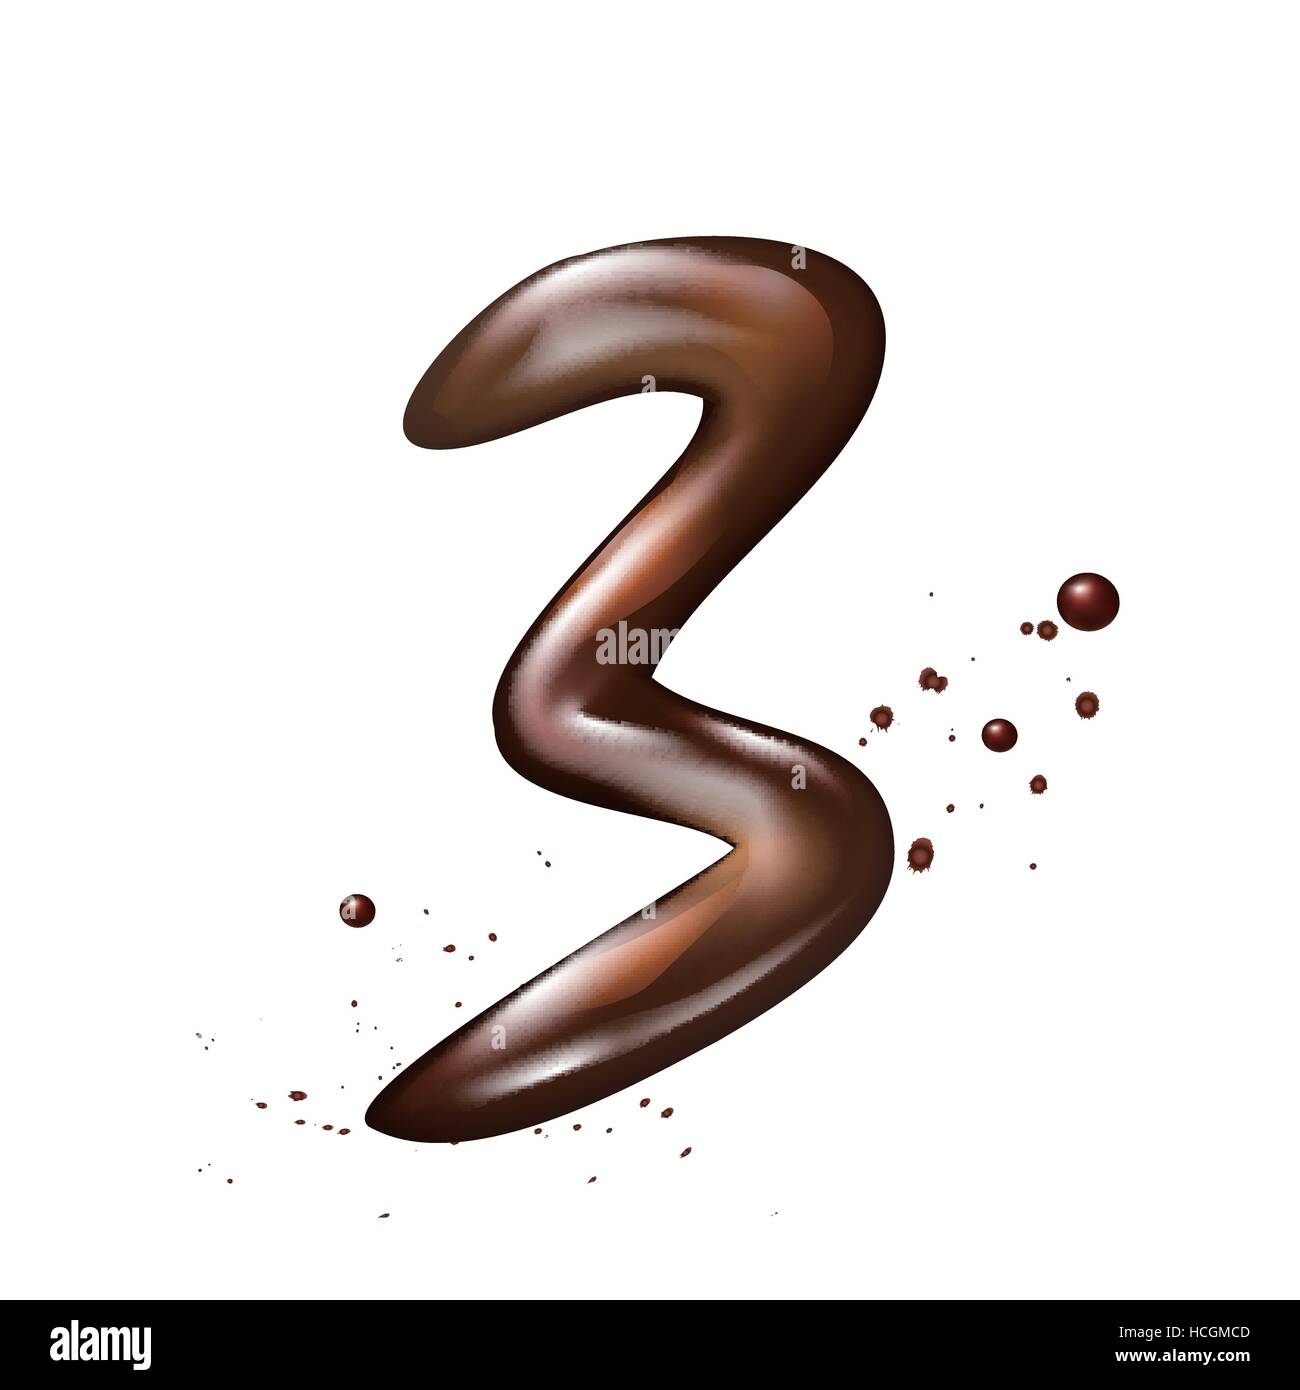 Шоколад число. Шоколадные цифры на белом фоне. Шоколадная цифра 2. Шоколадные цифры картинка. Цифры из шоколада картинка для фотошопа.